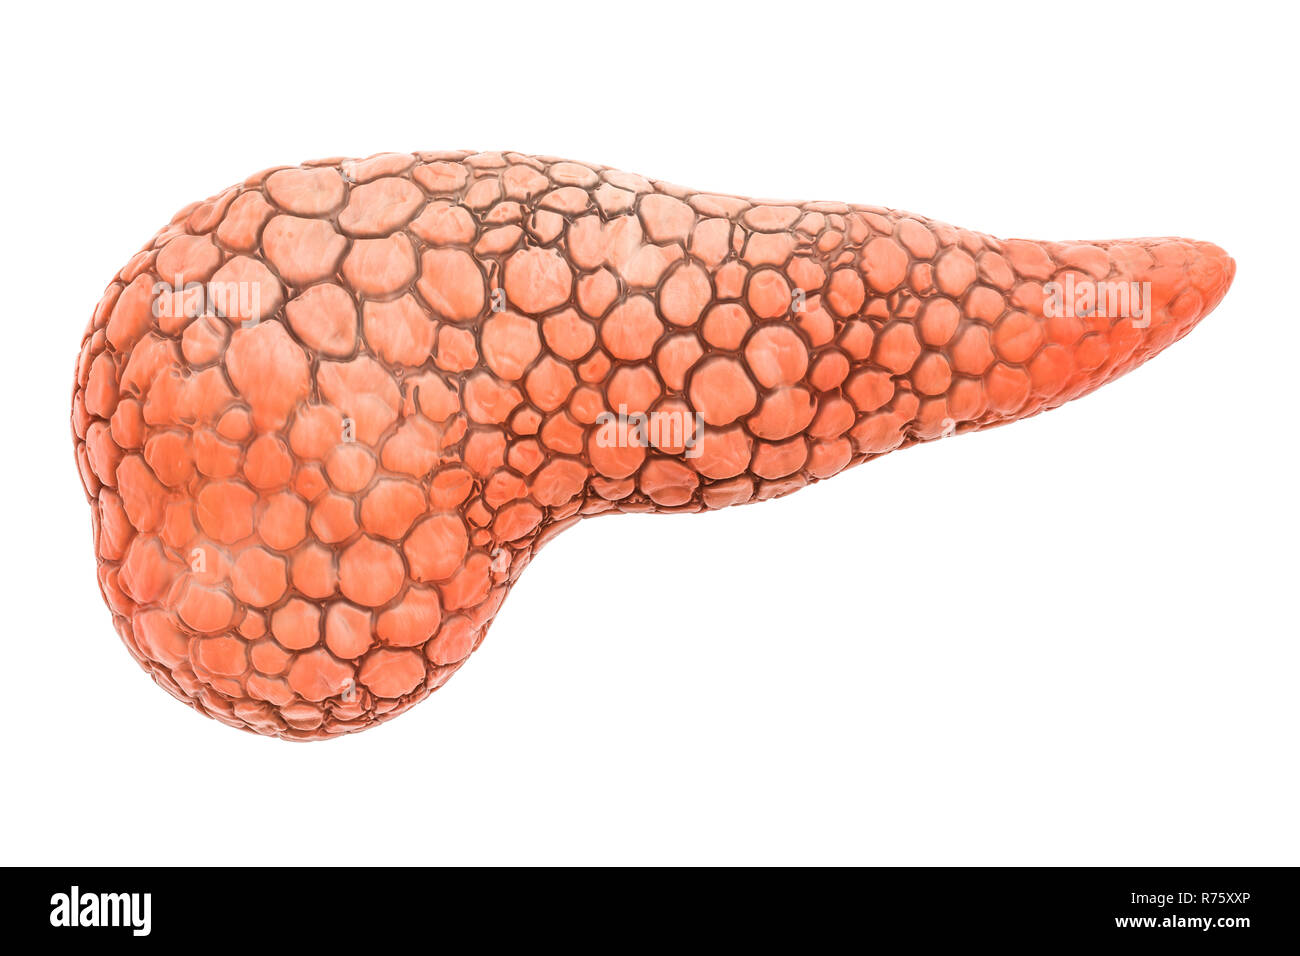 Pankreas Organ des Menschen, 3D-Rendering auf weißem Hintergrund Stockfoto